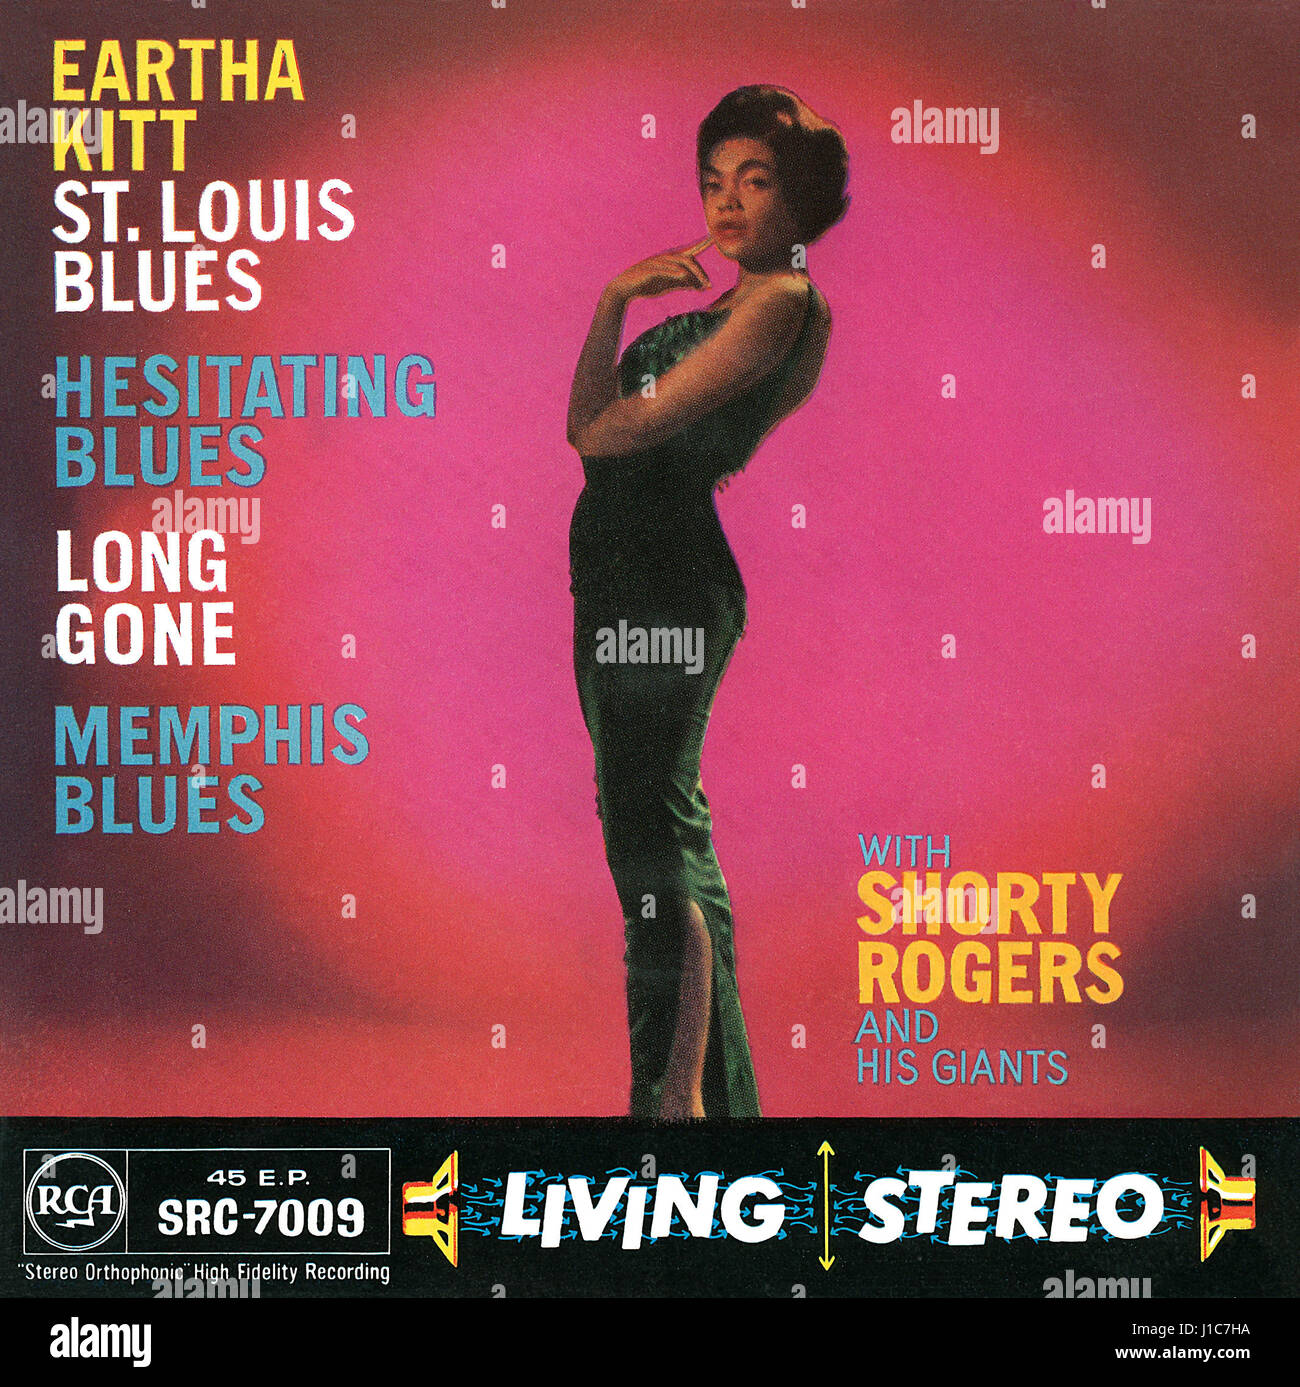 Titelseite der Plattencover für den UK EP St. Louis Blues von Eartha Kitt. Ausgestellt auf dem RCA-Label im Jahr 1958. Stockfoto